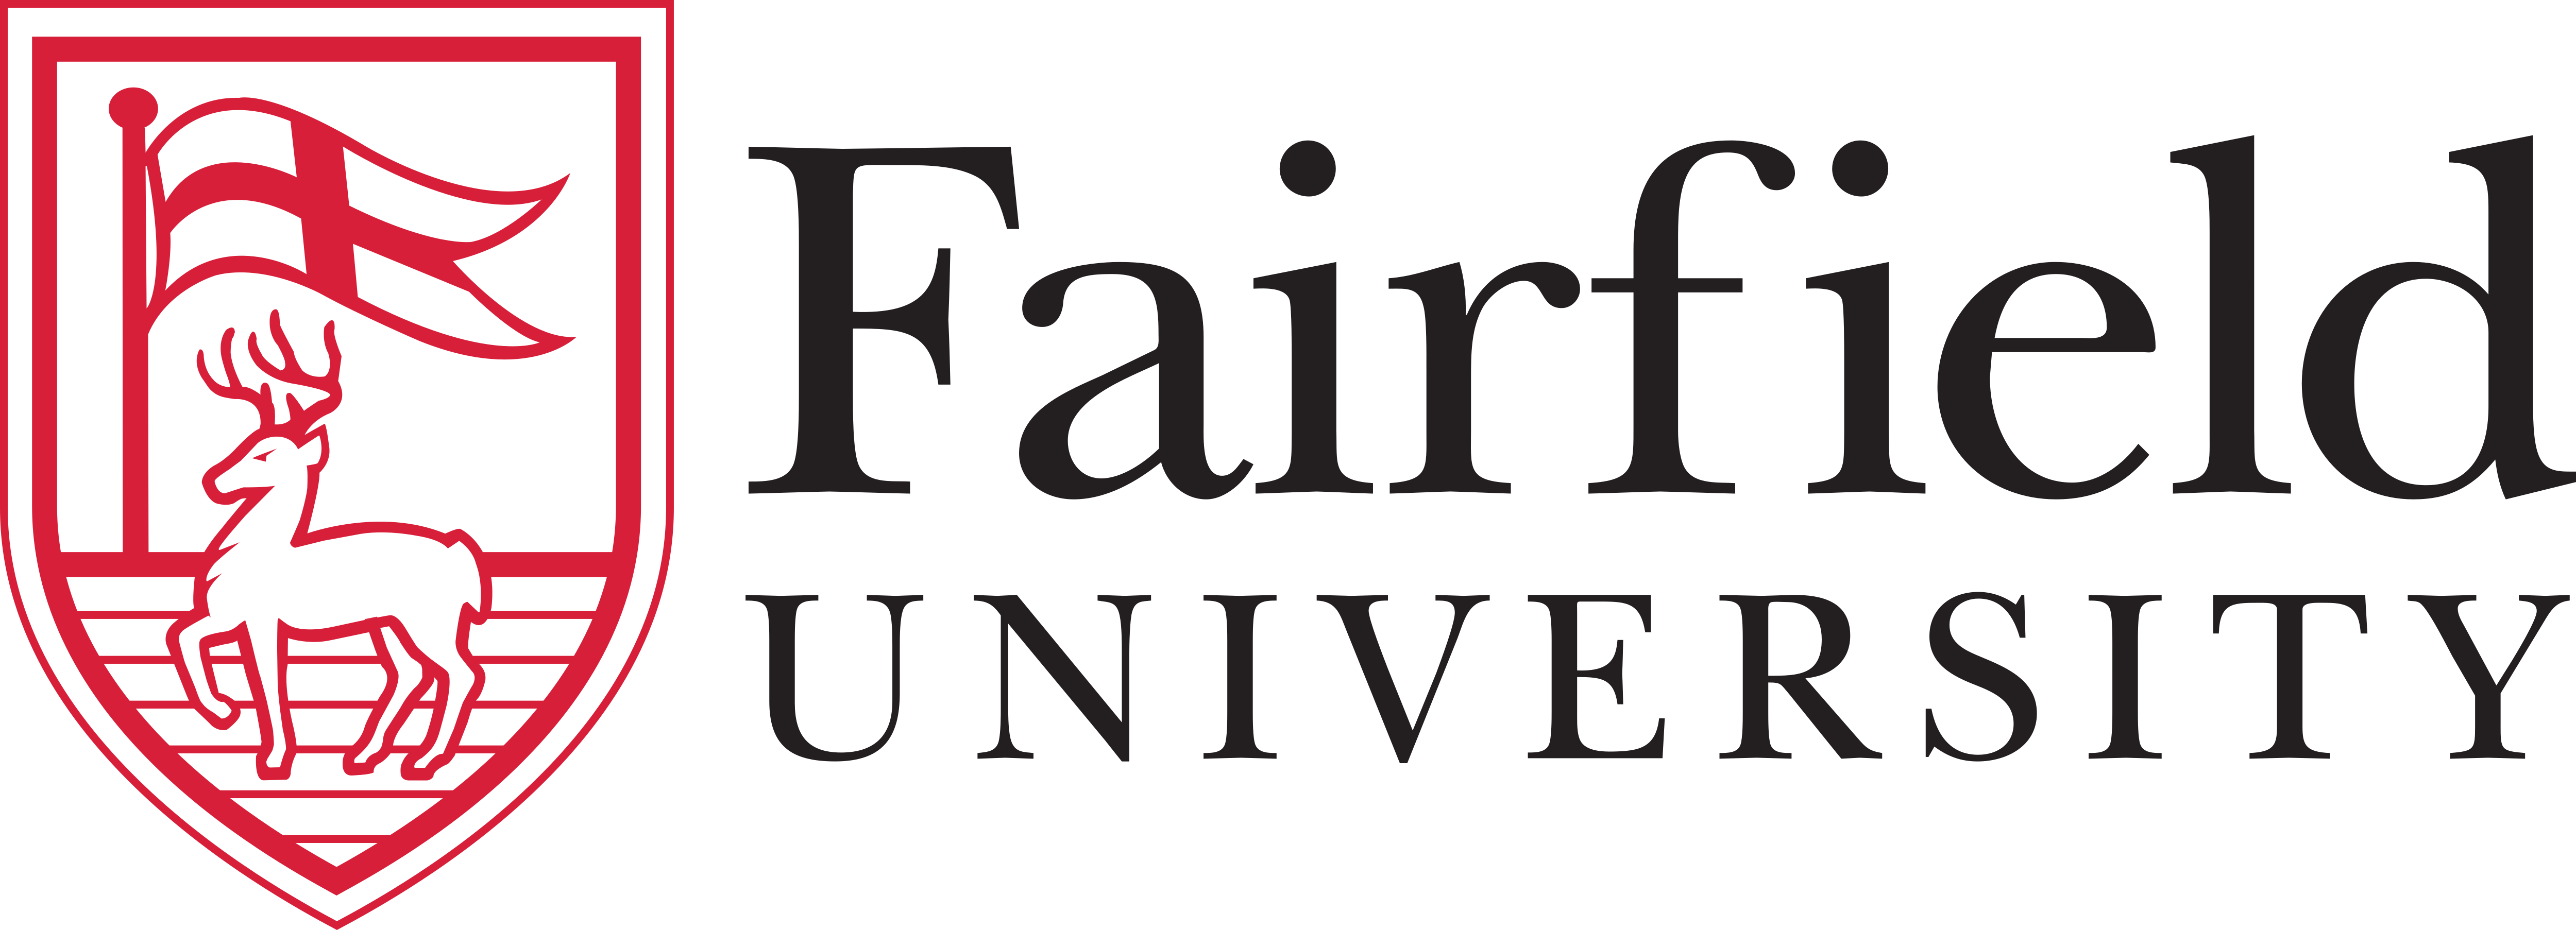 Logo for fairfield university